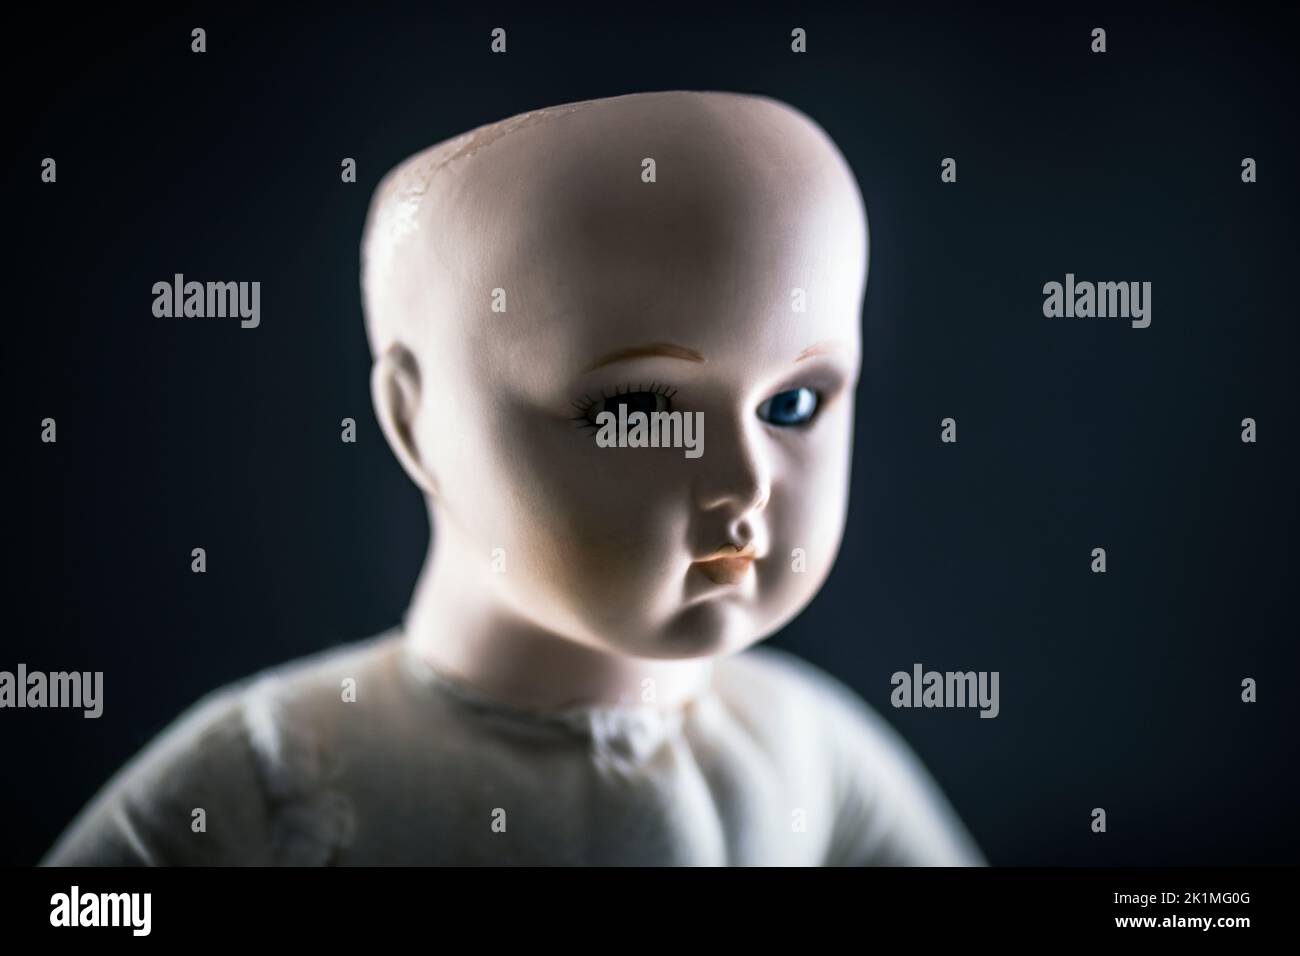 Gruseliges Puppengesicht auf dunklem Hintergrund Stockfoto